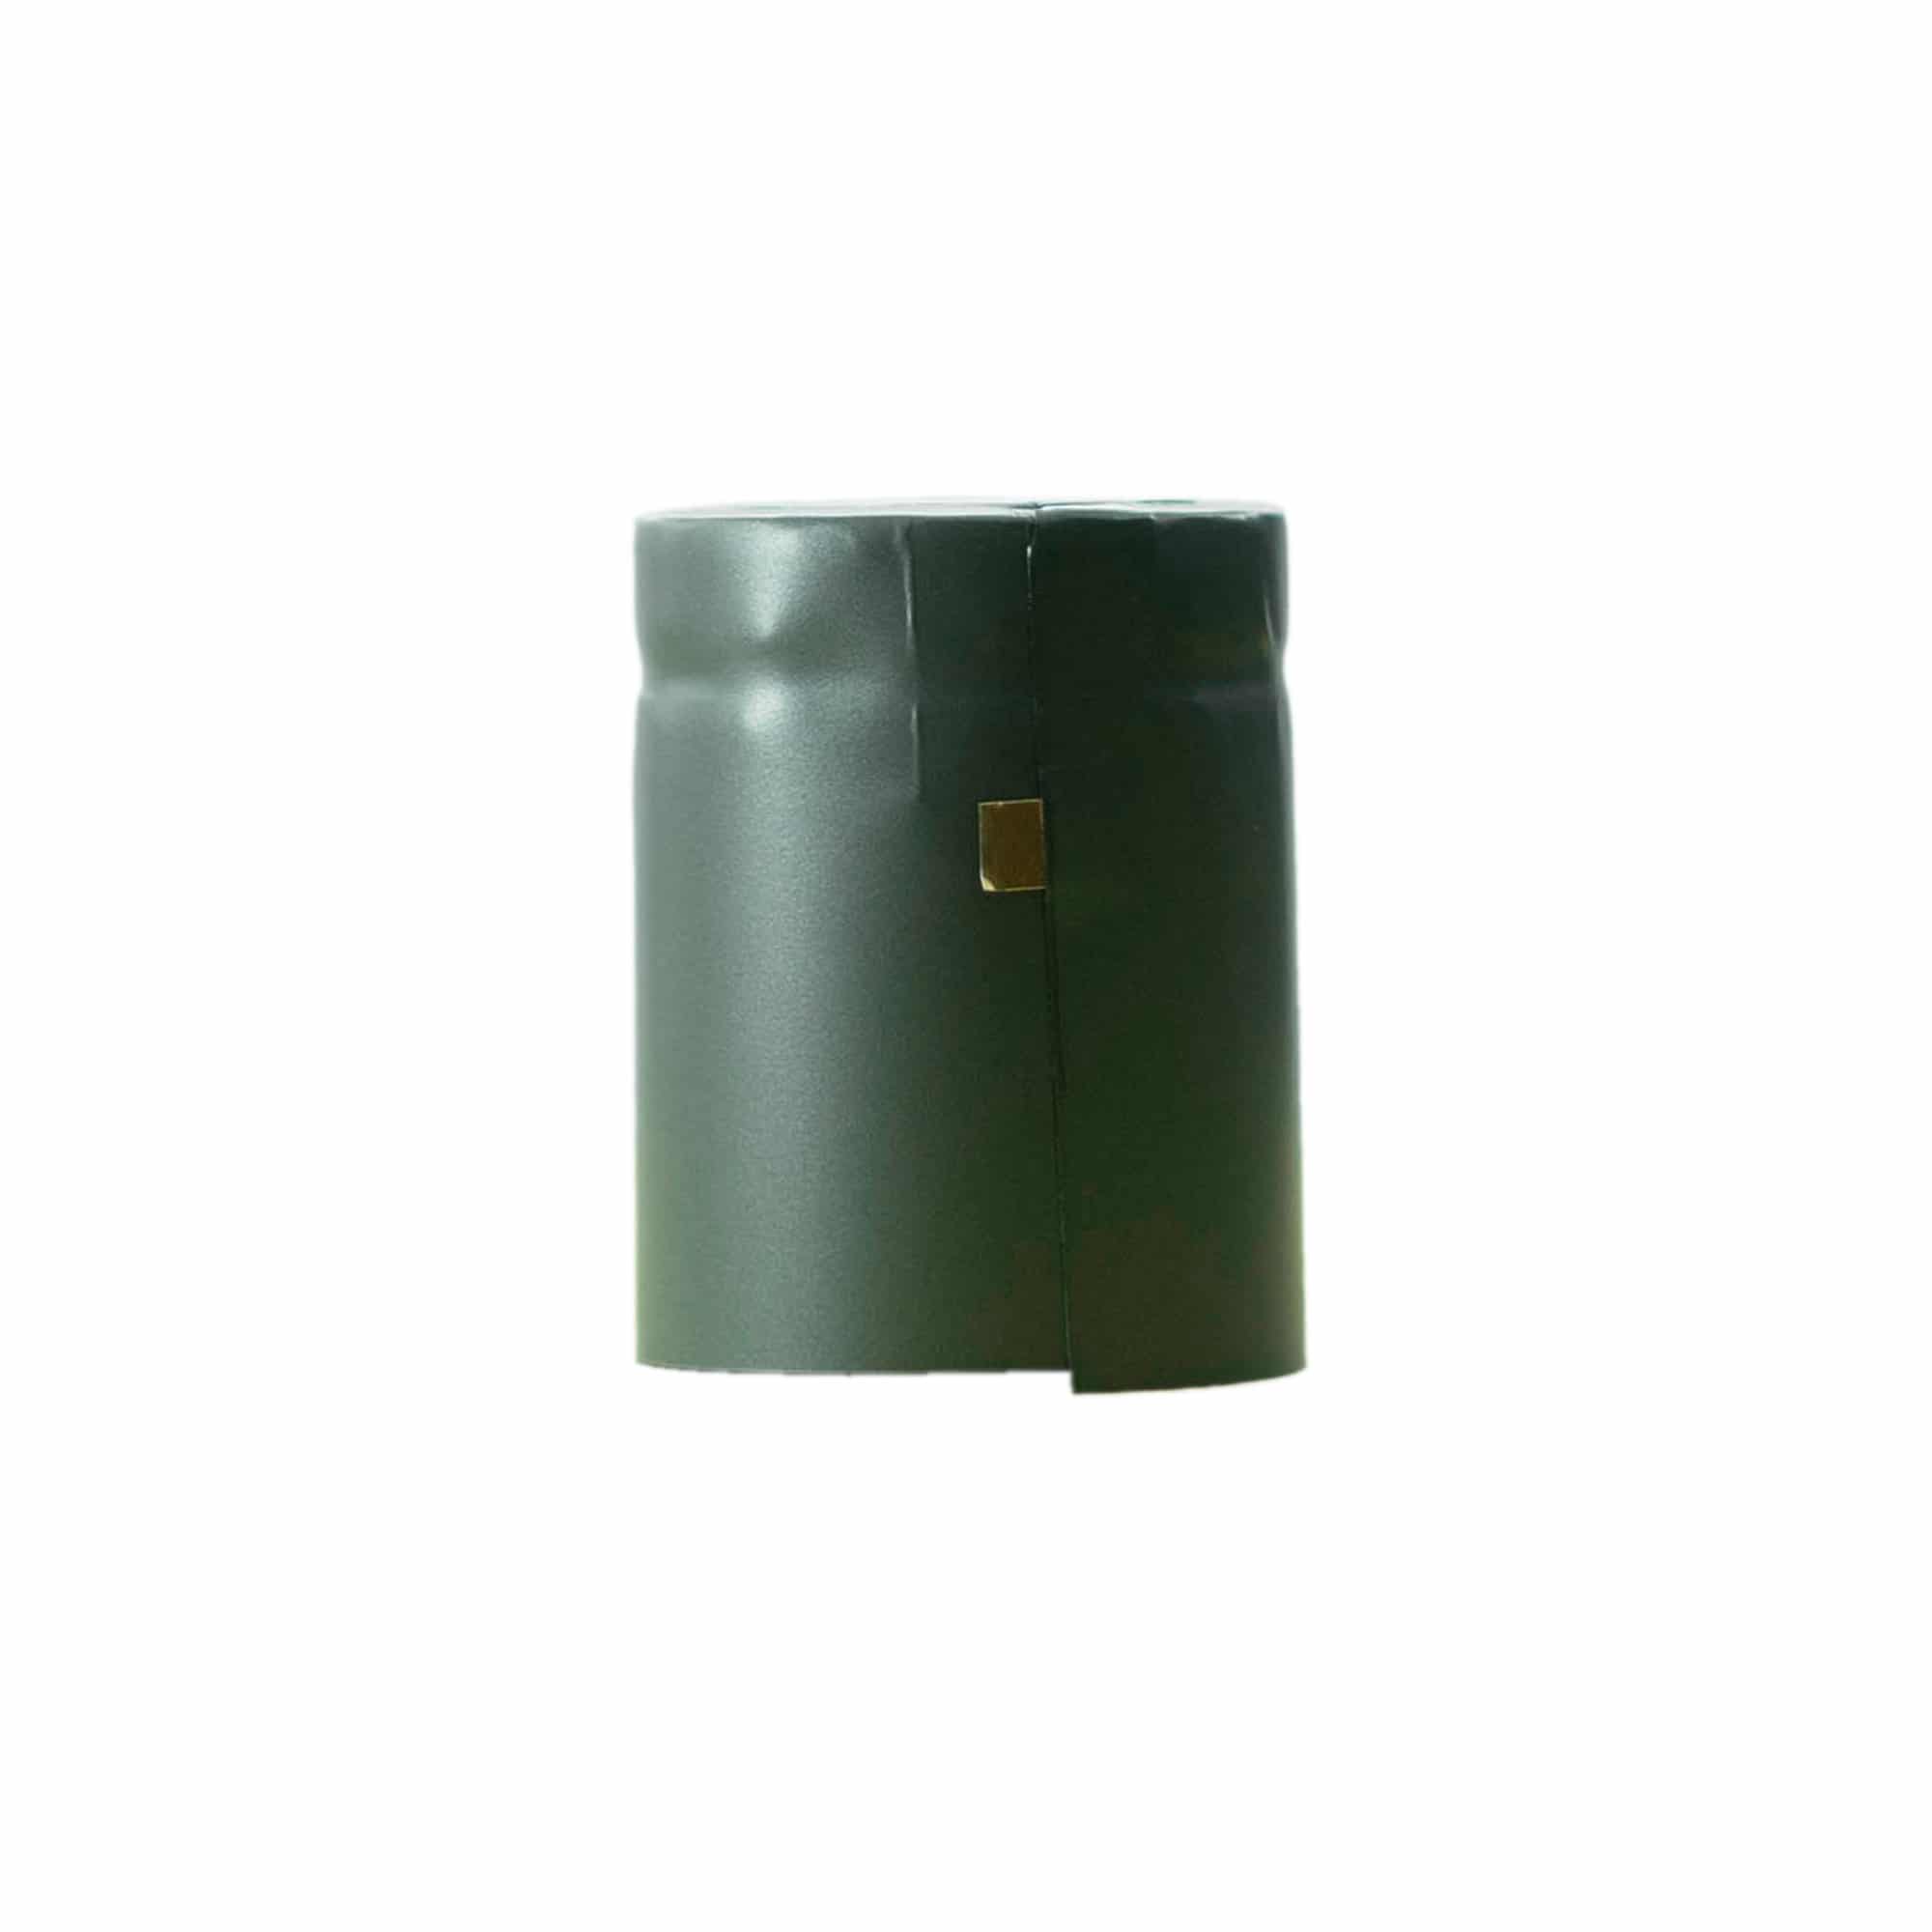 Capsule thermo-rétractable 32x41, plastique PVC, anthracite